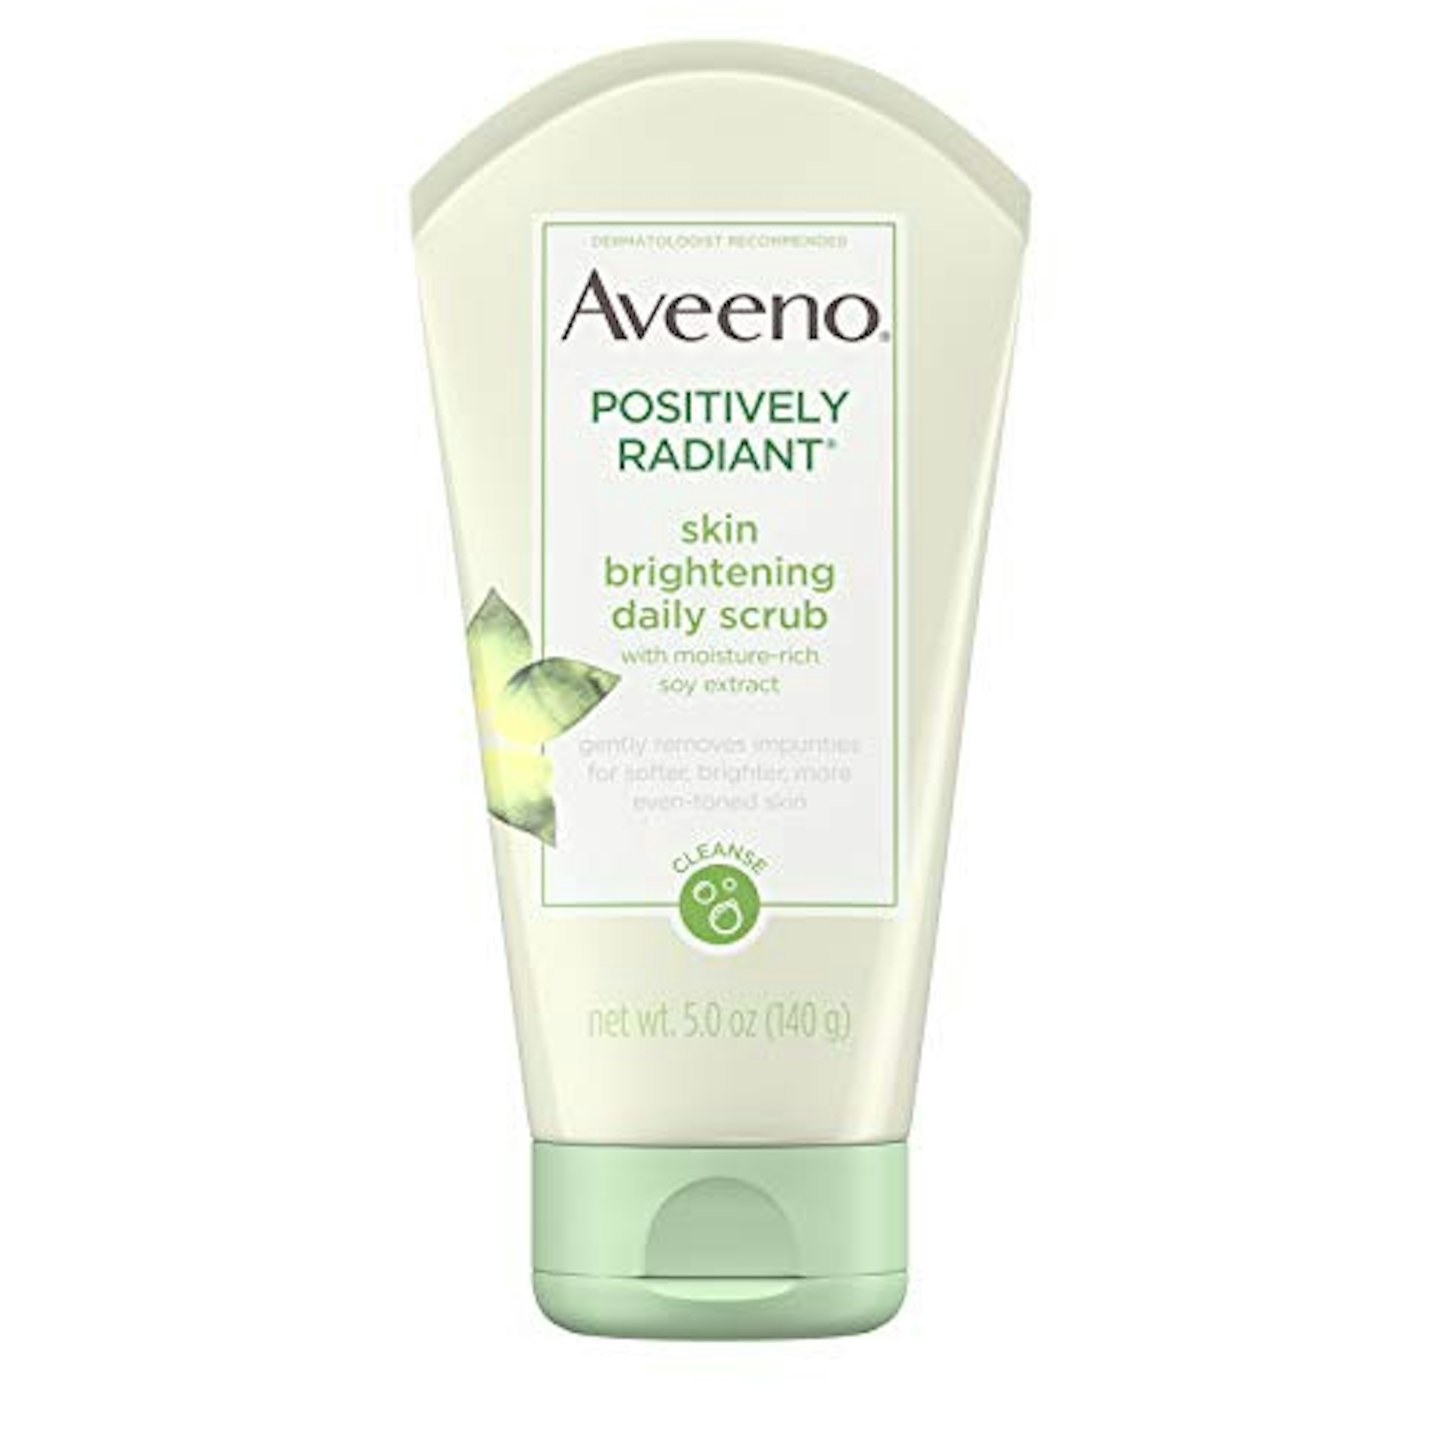 Aveeno skin brightening daily scrub